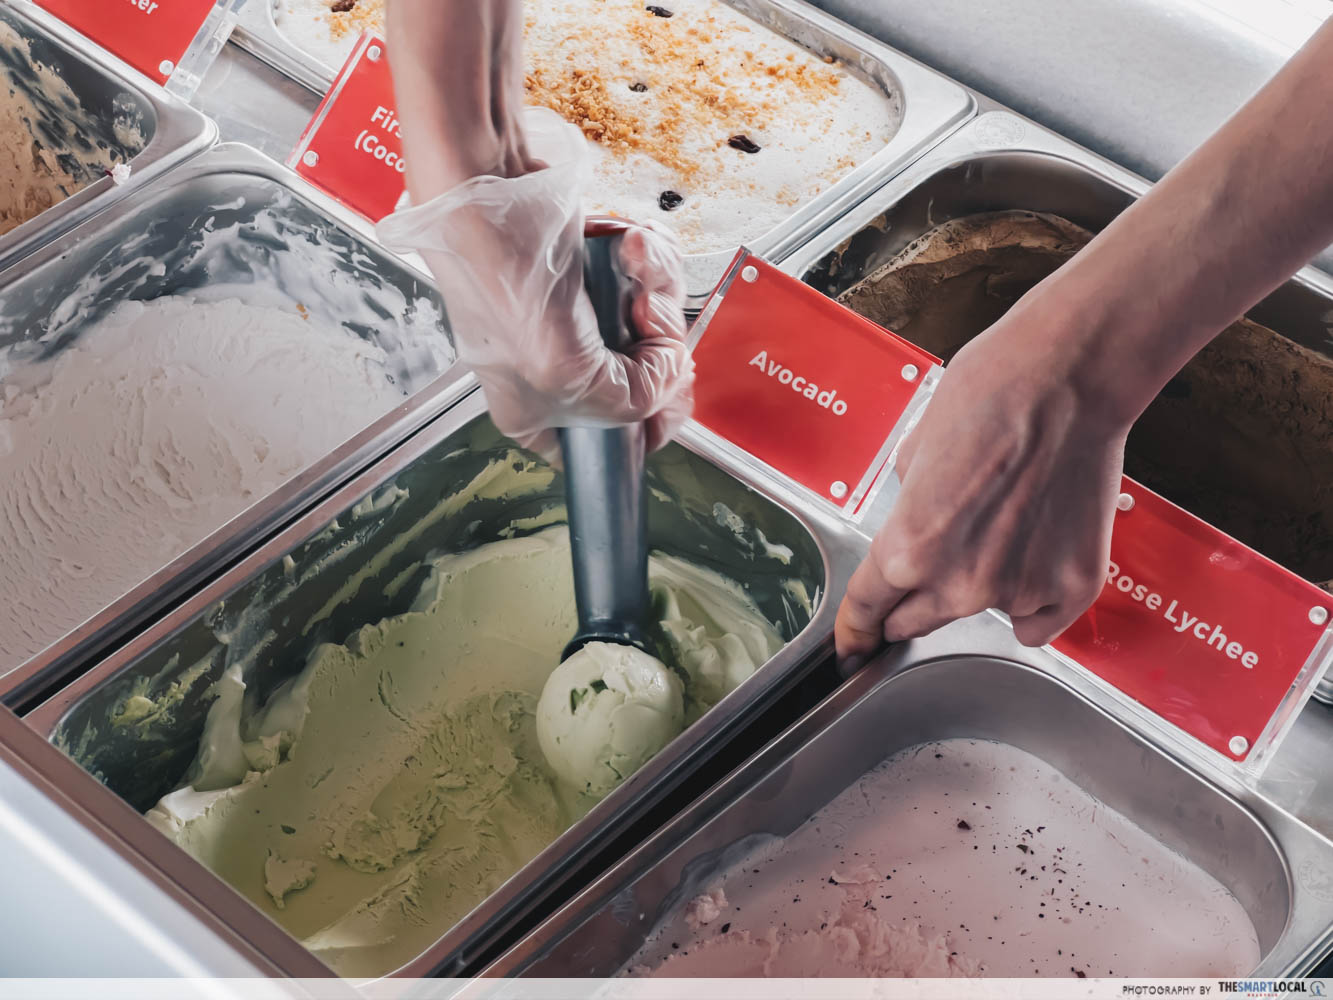 The Ais - ice cream scoop